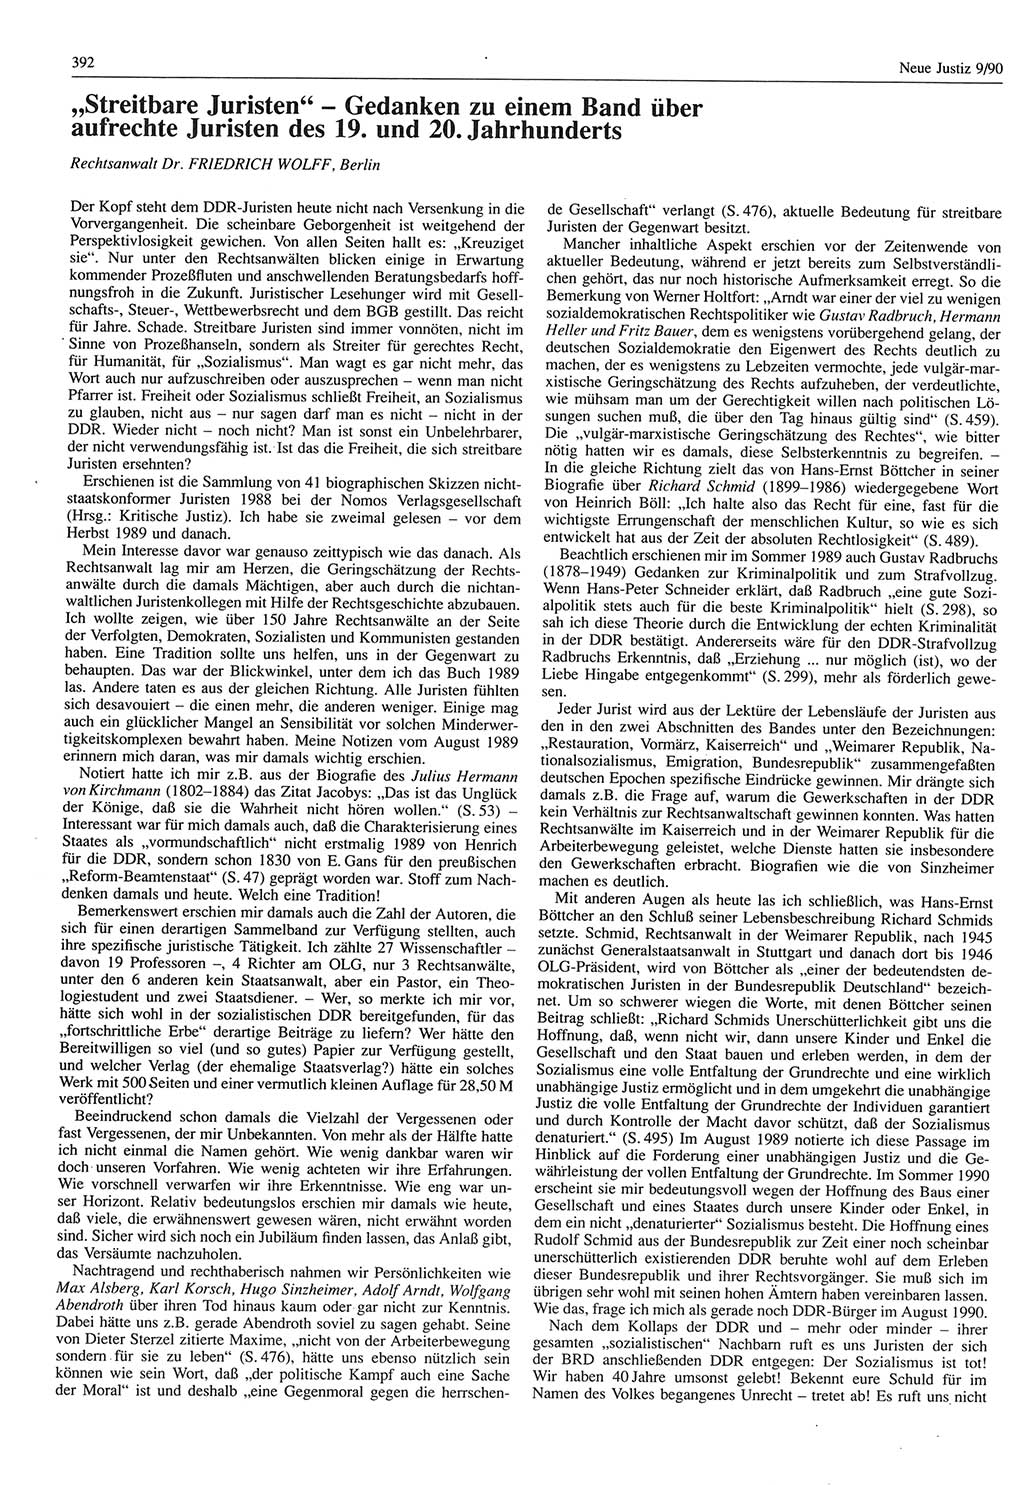 Neue Justiz (NJ), Zeitschrift für Rechtsetzung und Rechtsanwendung [Deutsche Demokratische Republik (DDR)], 44. Jahrgang 1990, Seite 392 (NJ DDR 1990, S. 392)